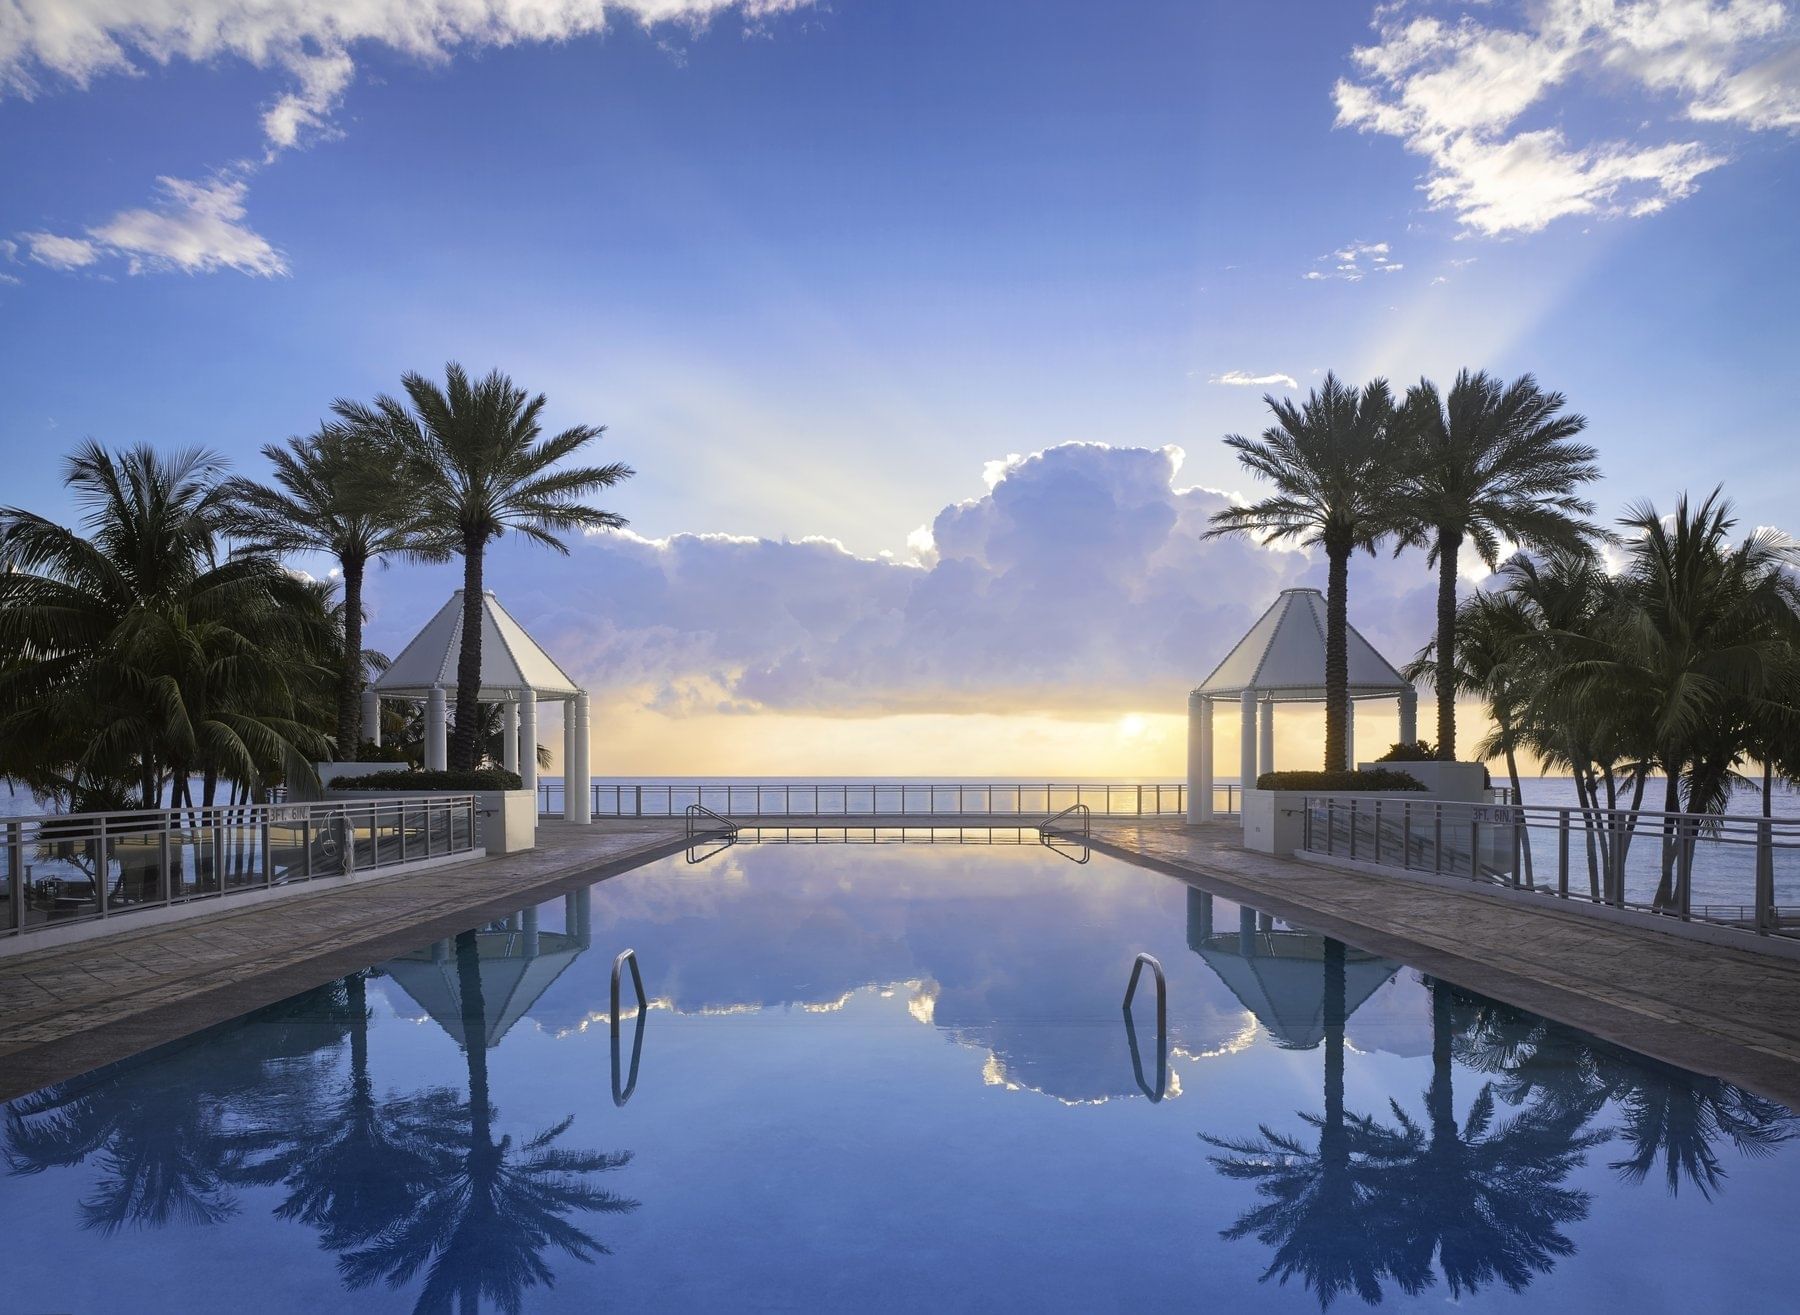 Infinity Pool at Dawn - The Diplomat Beach Resort, South FL